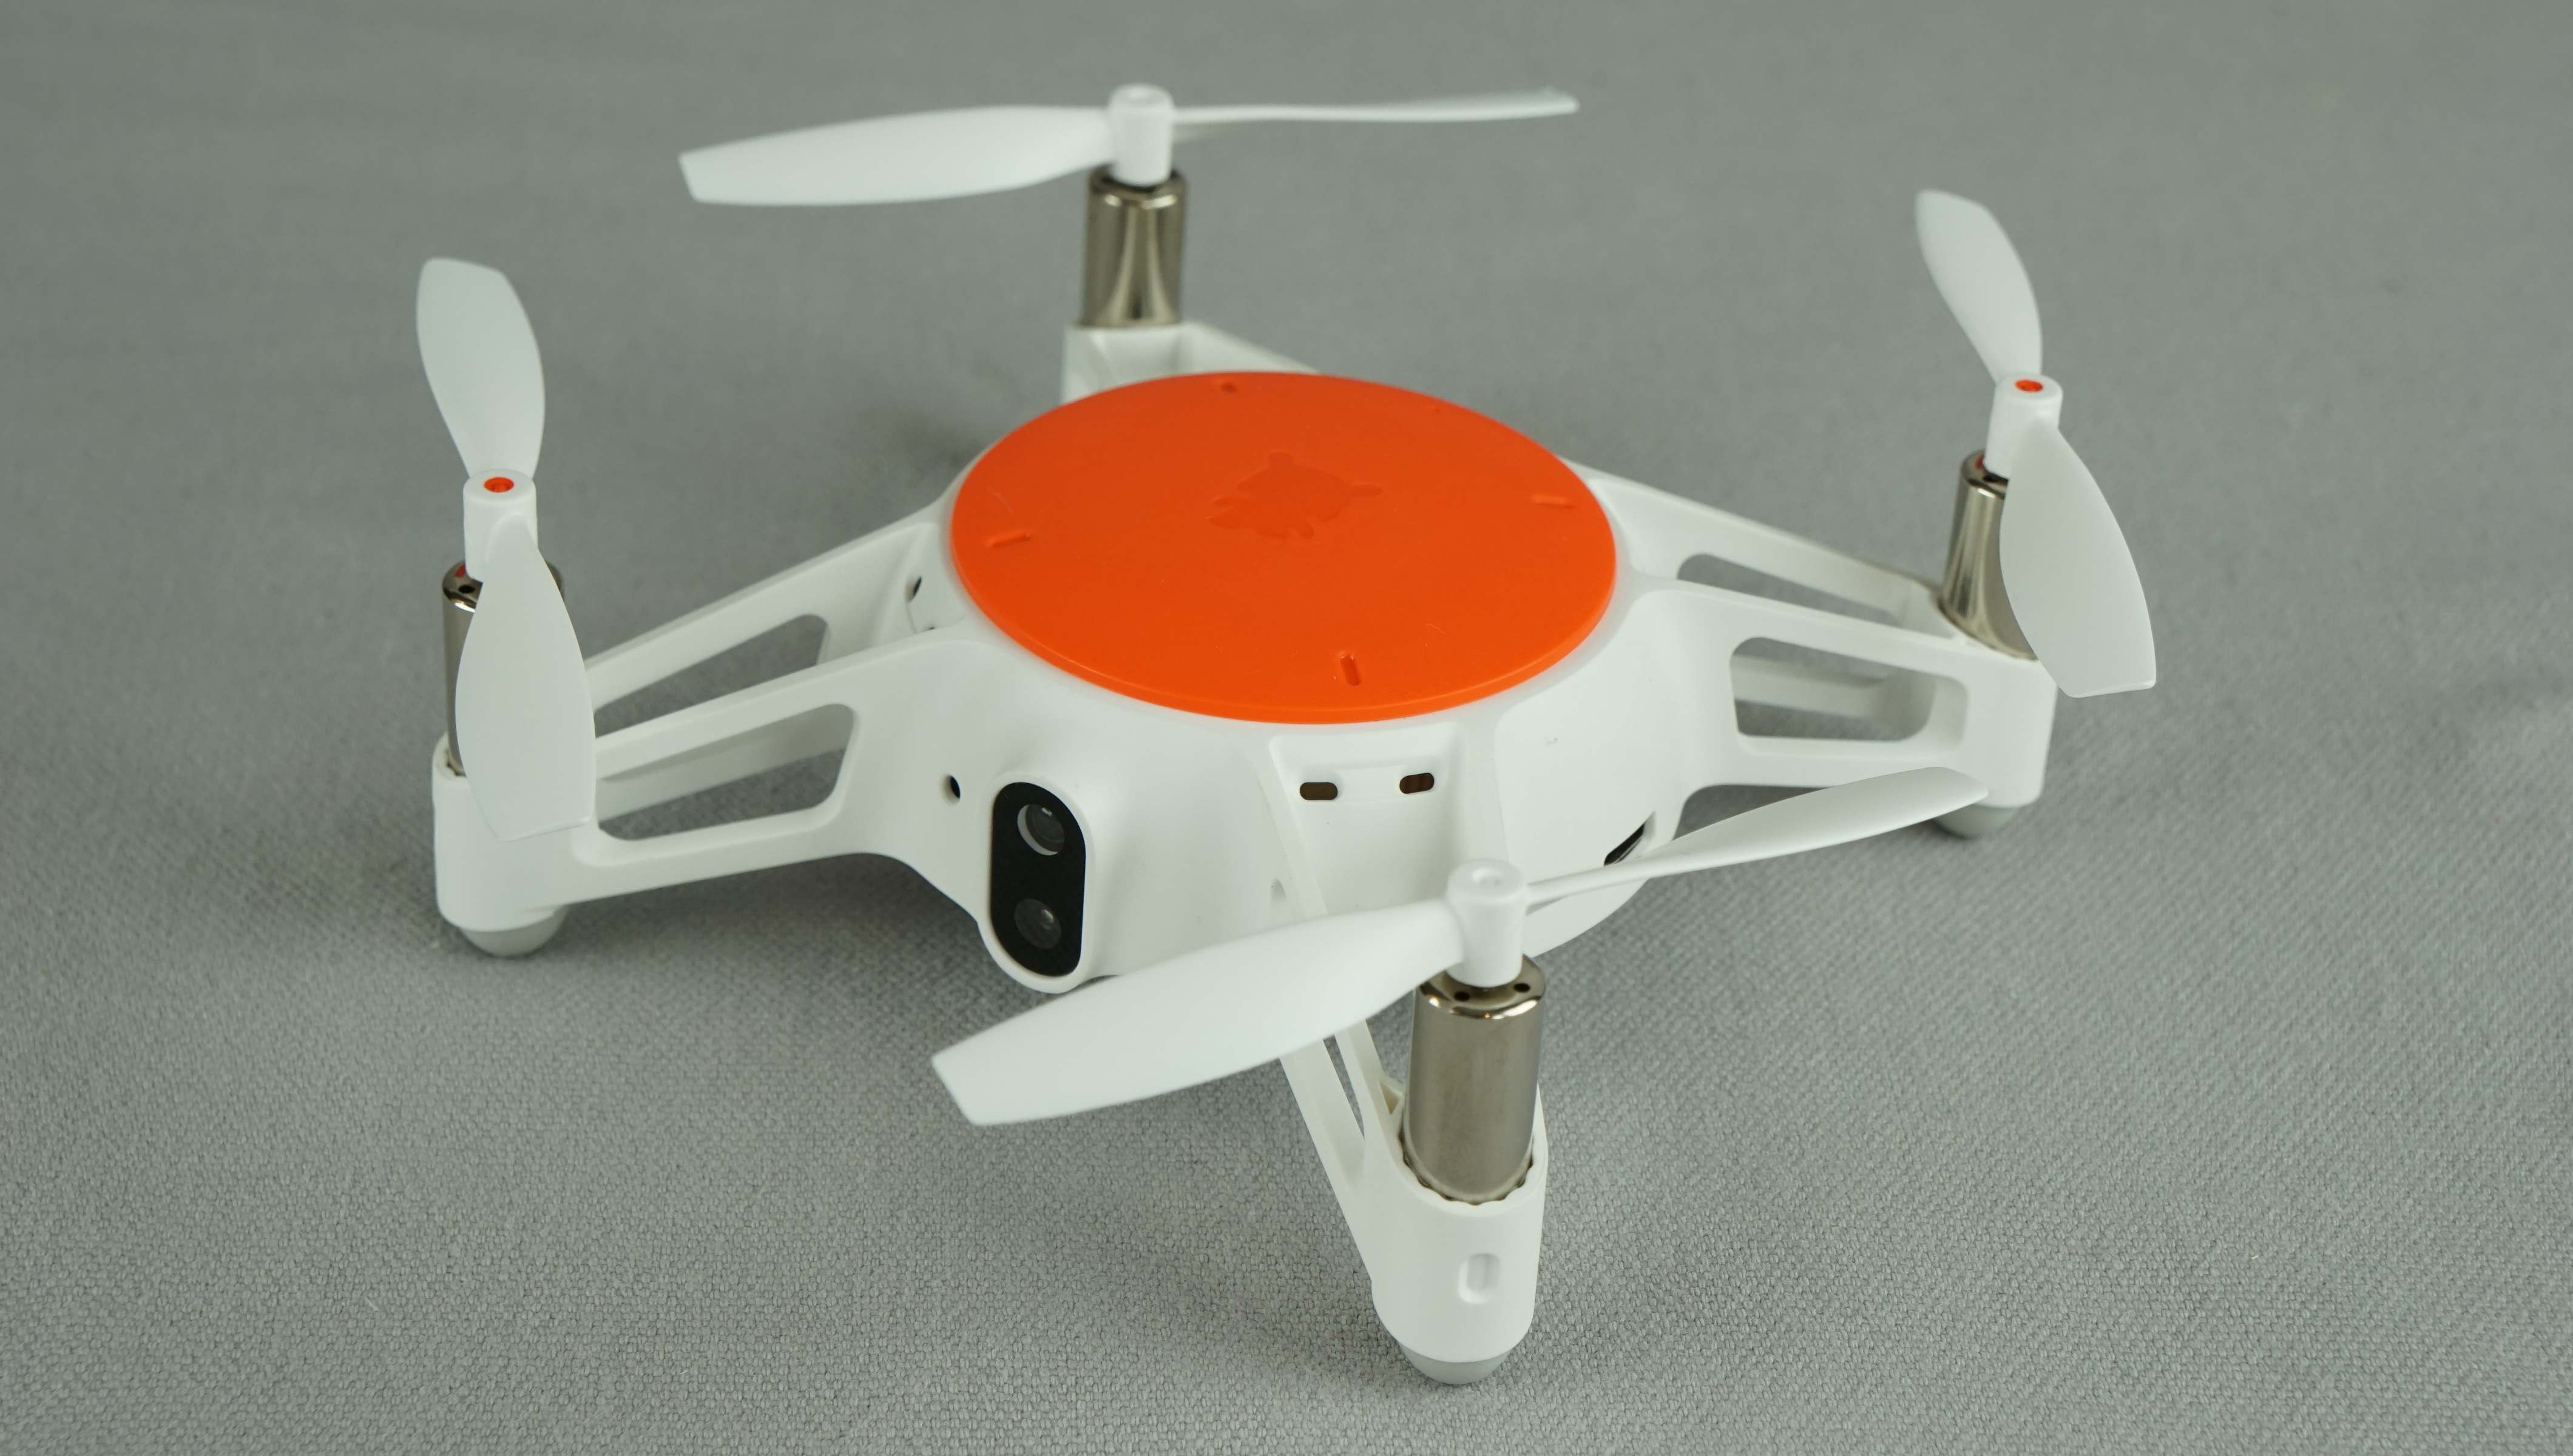 xiaomi mi drone mini review